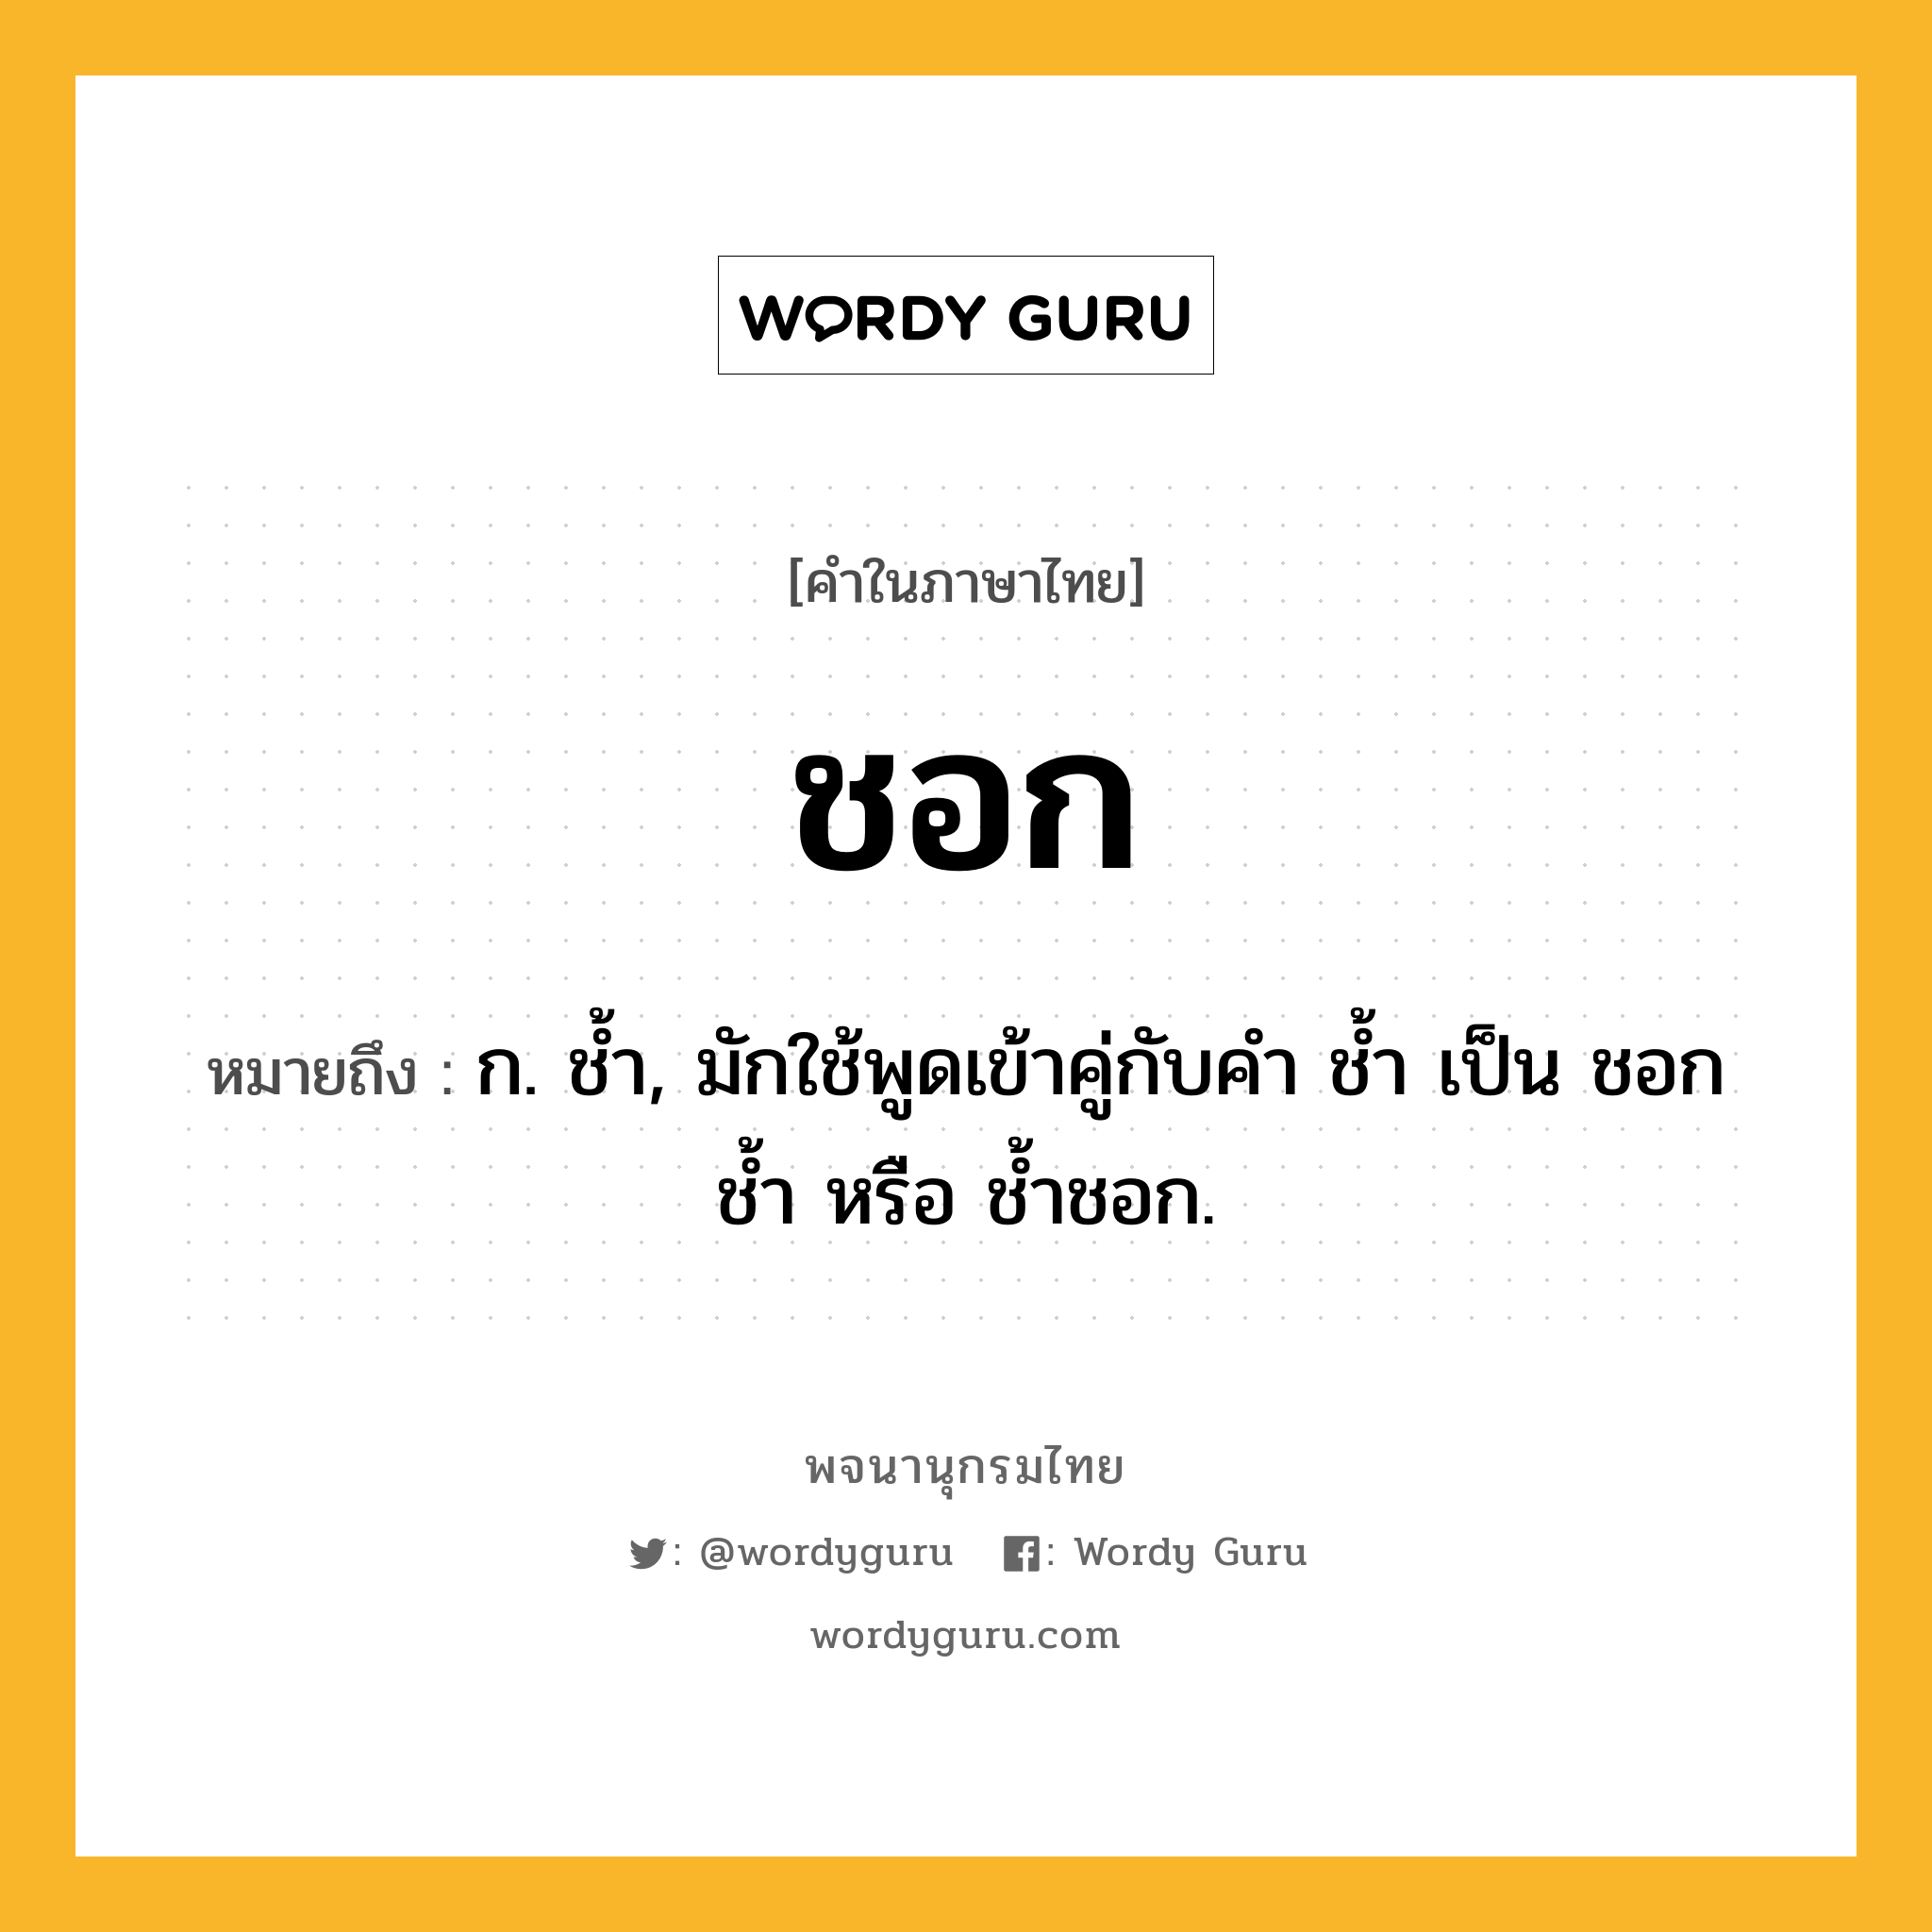 ชอก ความหมาย หมายถึงอะไร?, คำในภาษาไทย ชอก หมายถึง ก. ชํ้า, มักใช้พูดเข้าคู่กับคํา ชํ้า เป็น ชอกชํ้า หรือ ชํ้าชอก.